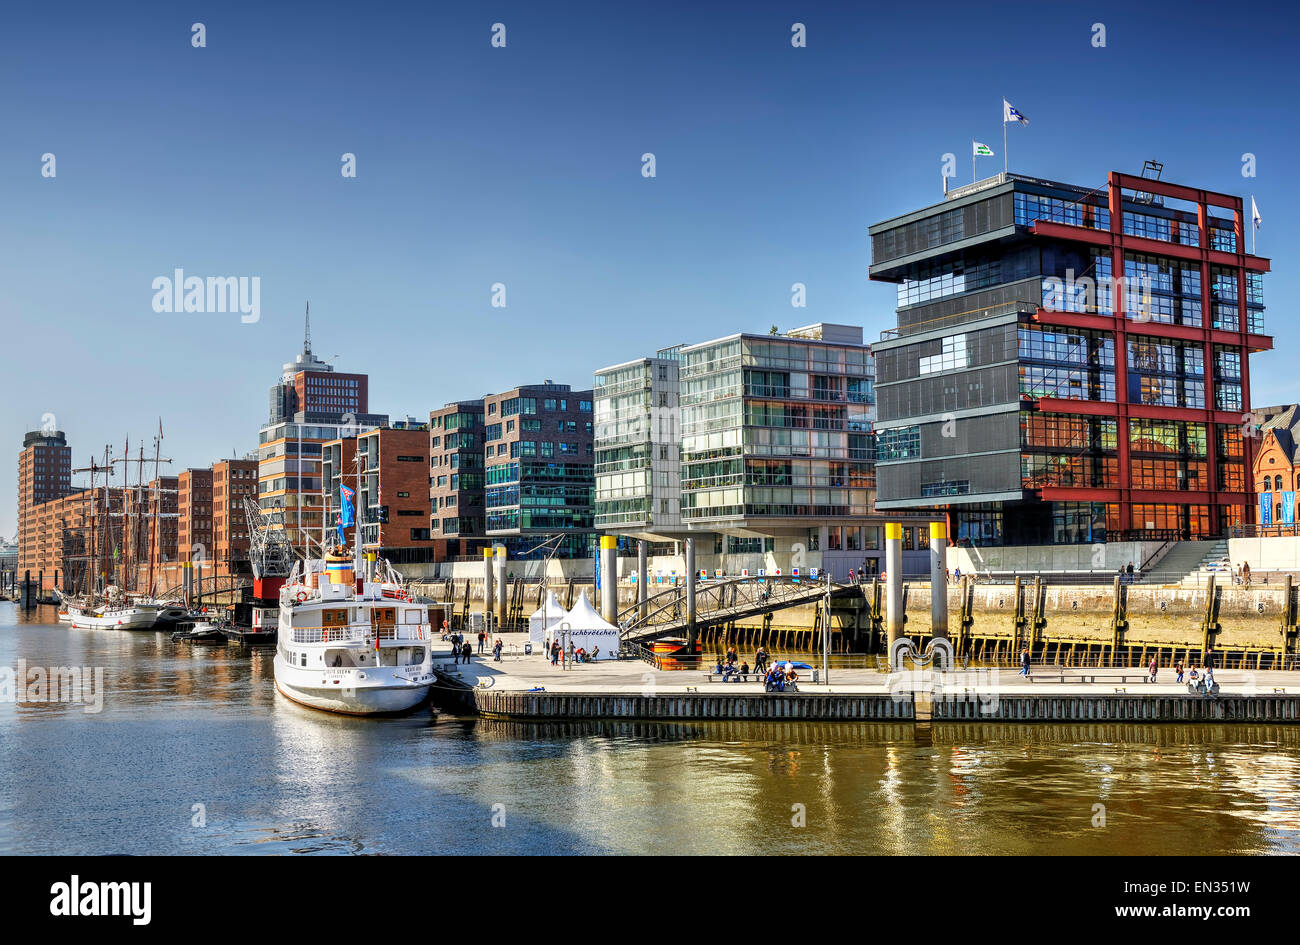 Sandtorhafen in HafenCity, Hamburg, Germany Stock Photo